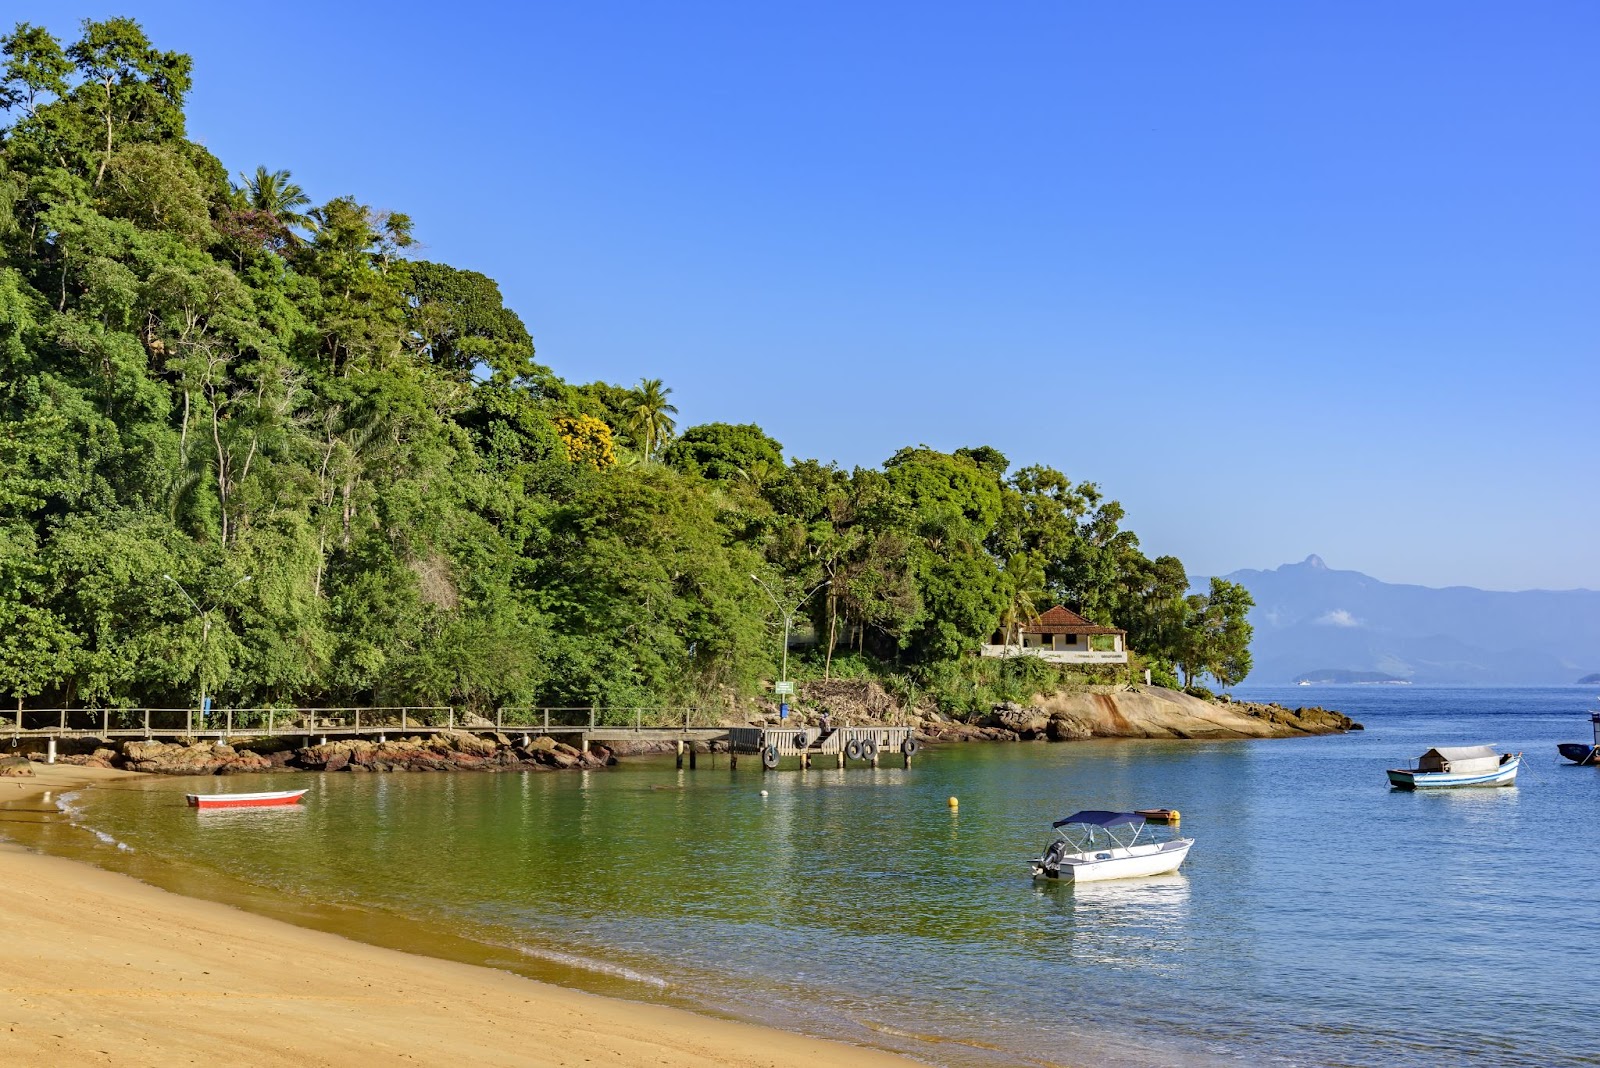 Final da Praia Vermelha da Ilha Grande, em Ilha Grande, Rio de Janeiro. A faixa de areia dourada termina em uma ponta coberta por floresta nativa. Algumas embarcações flutuam na água esverdeada